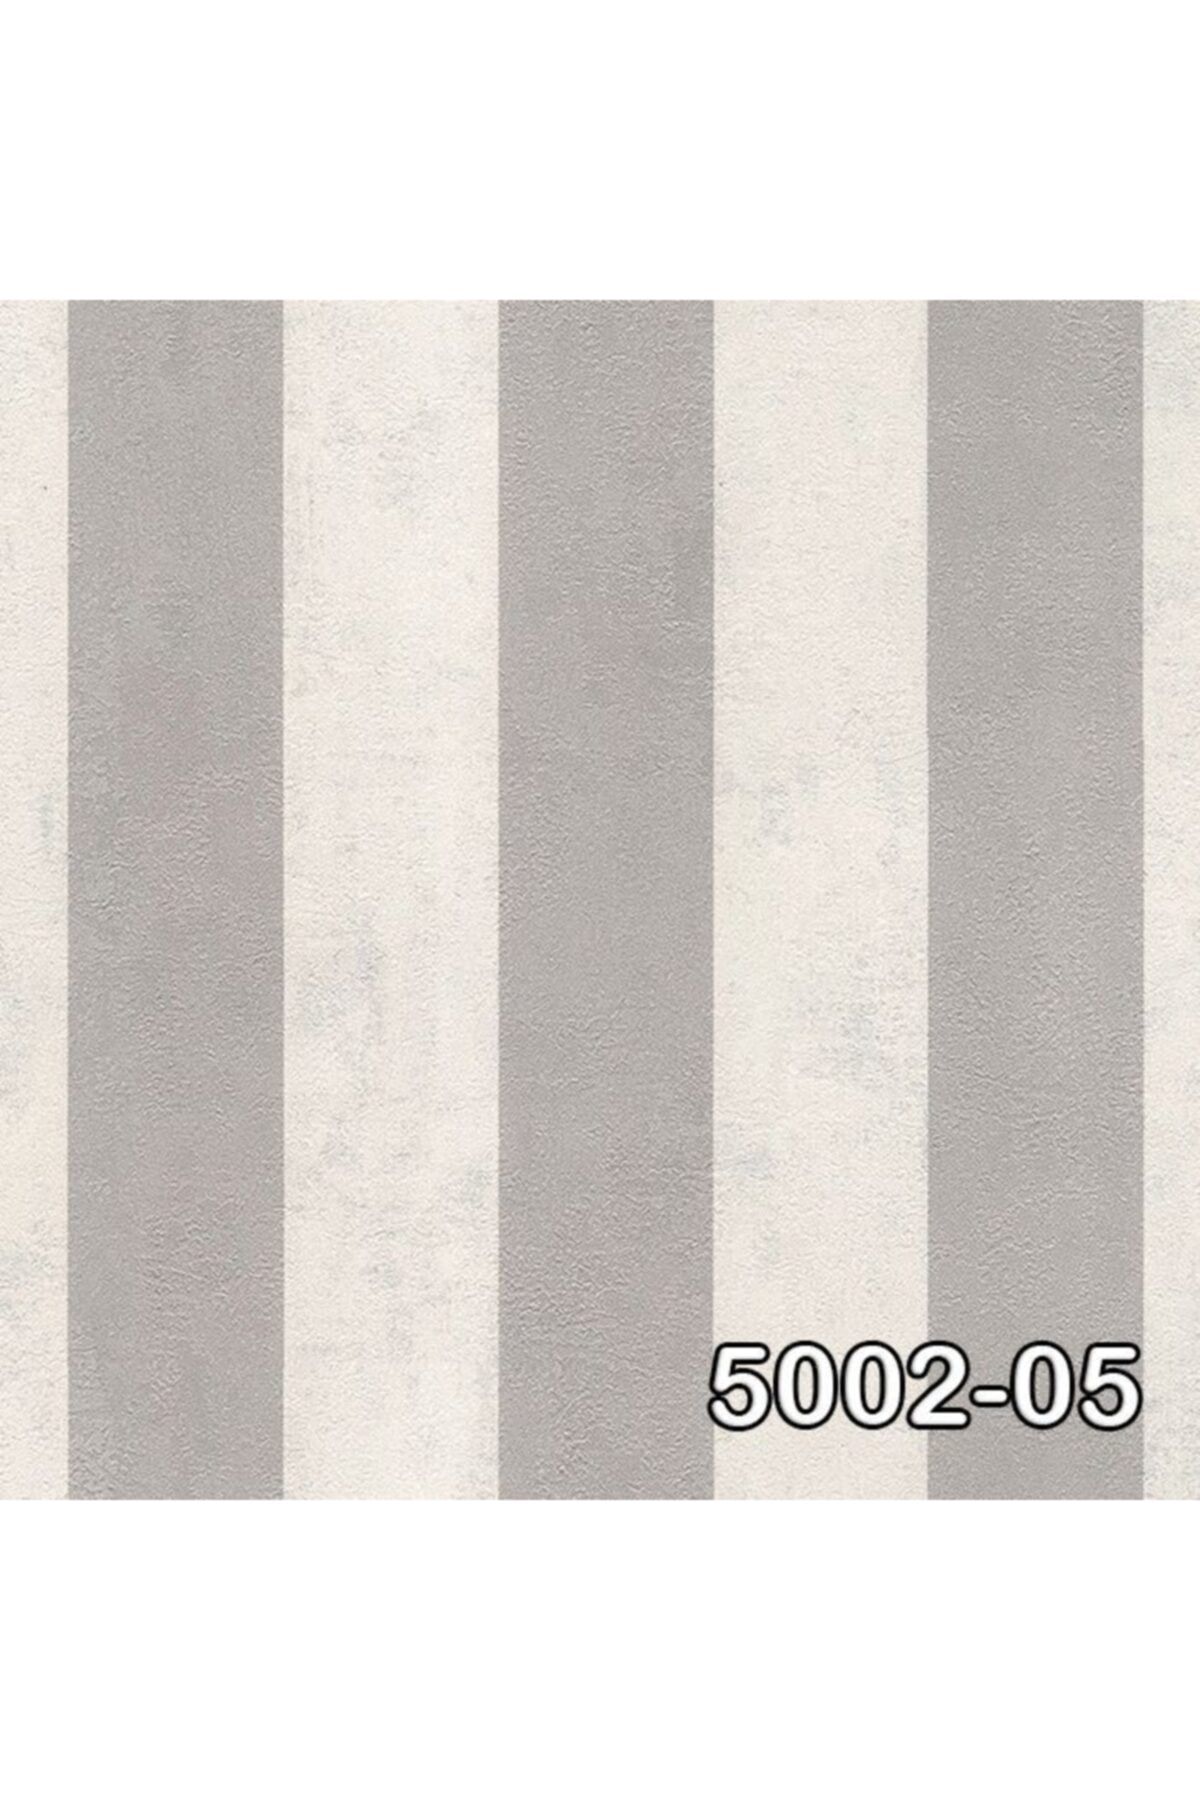 Genel Markalar Retro Gri Renk Zebra Desenli Duvar Kağıdı 5003-05